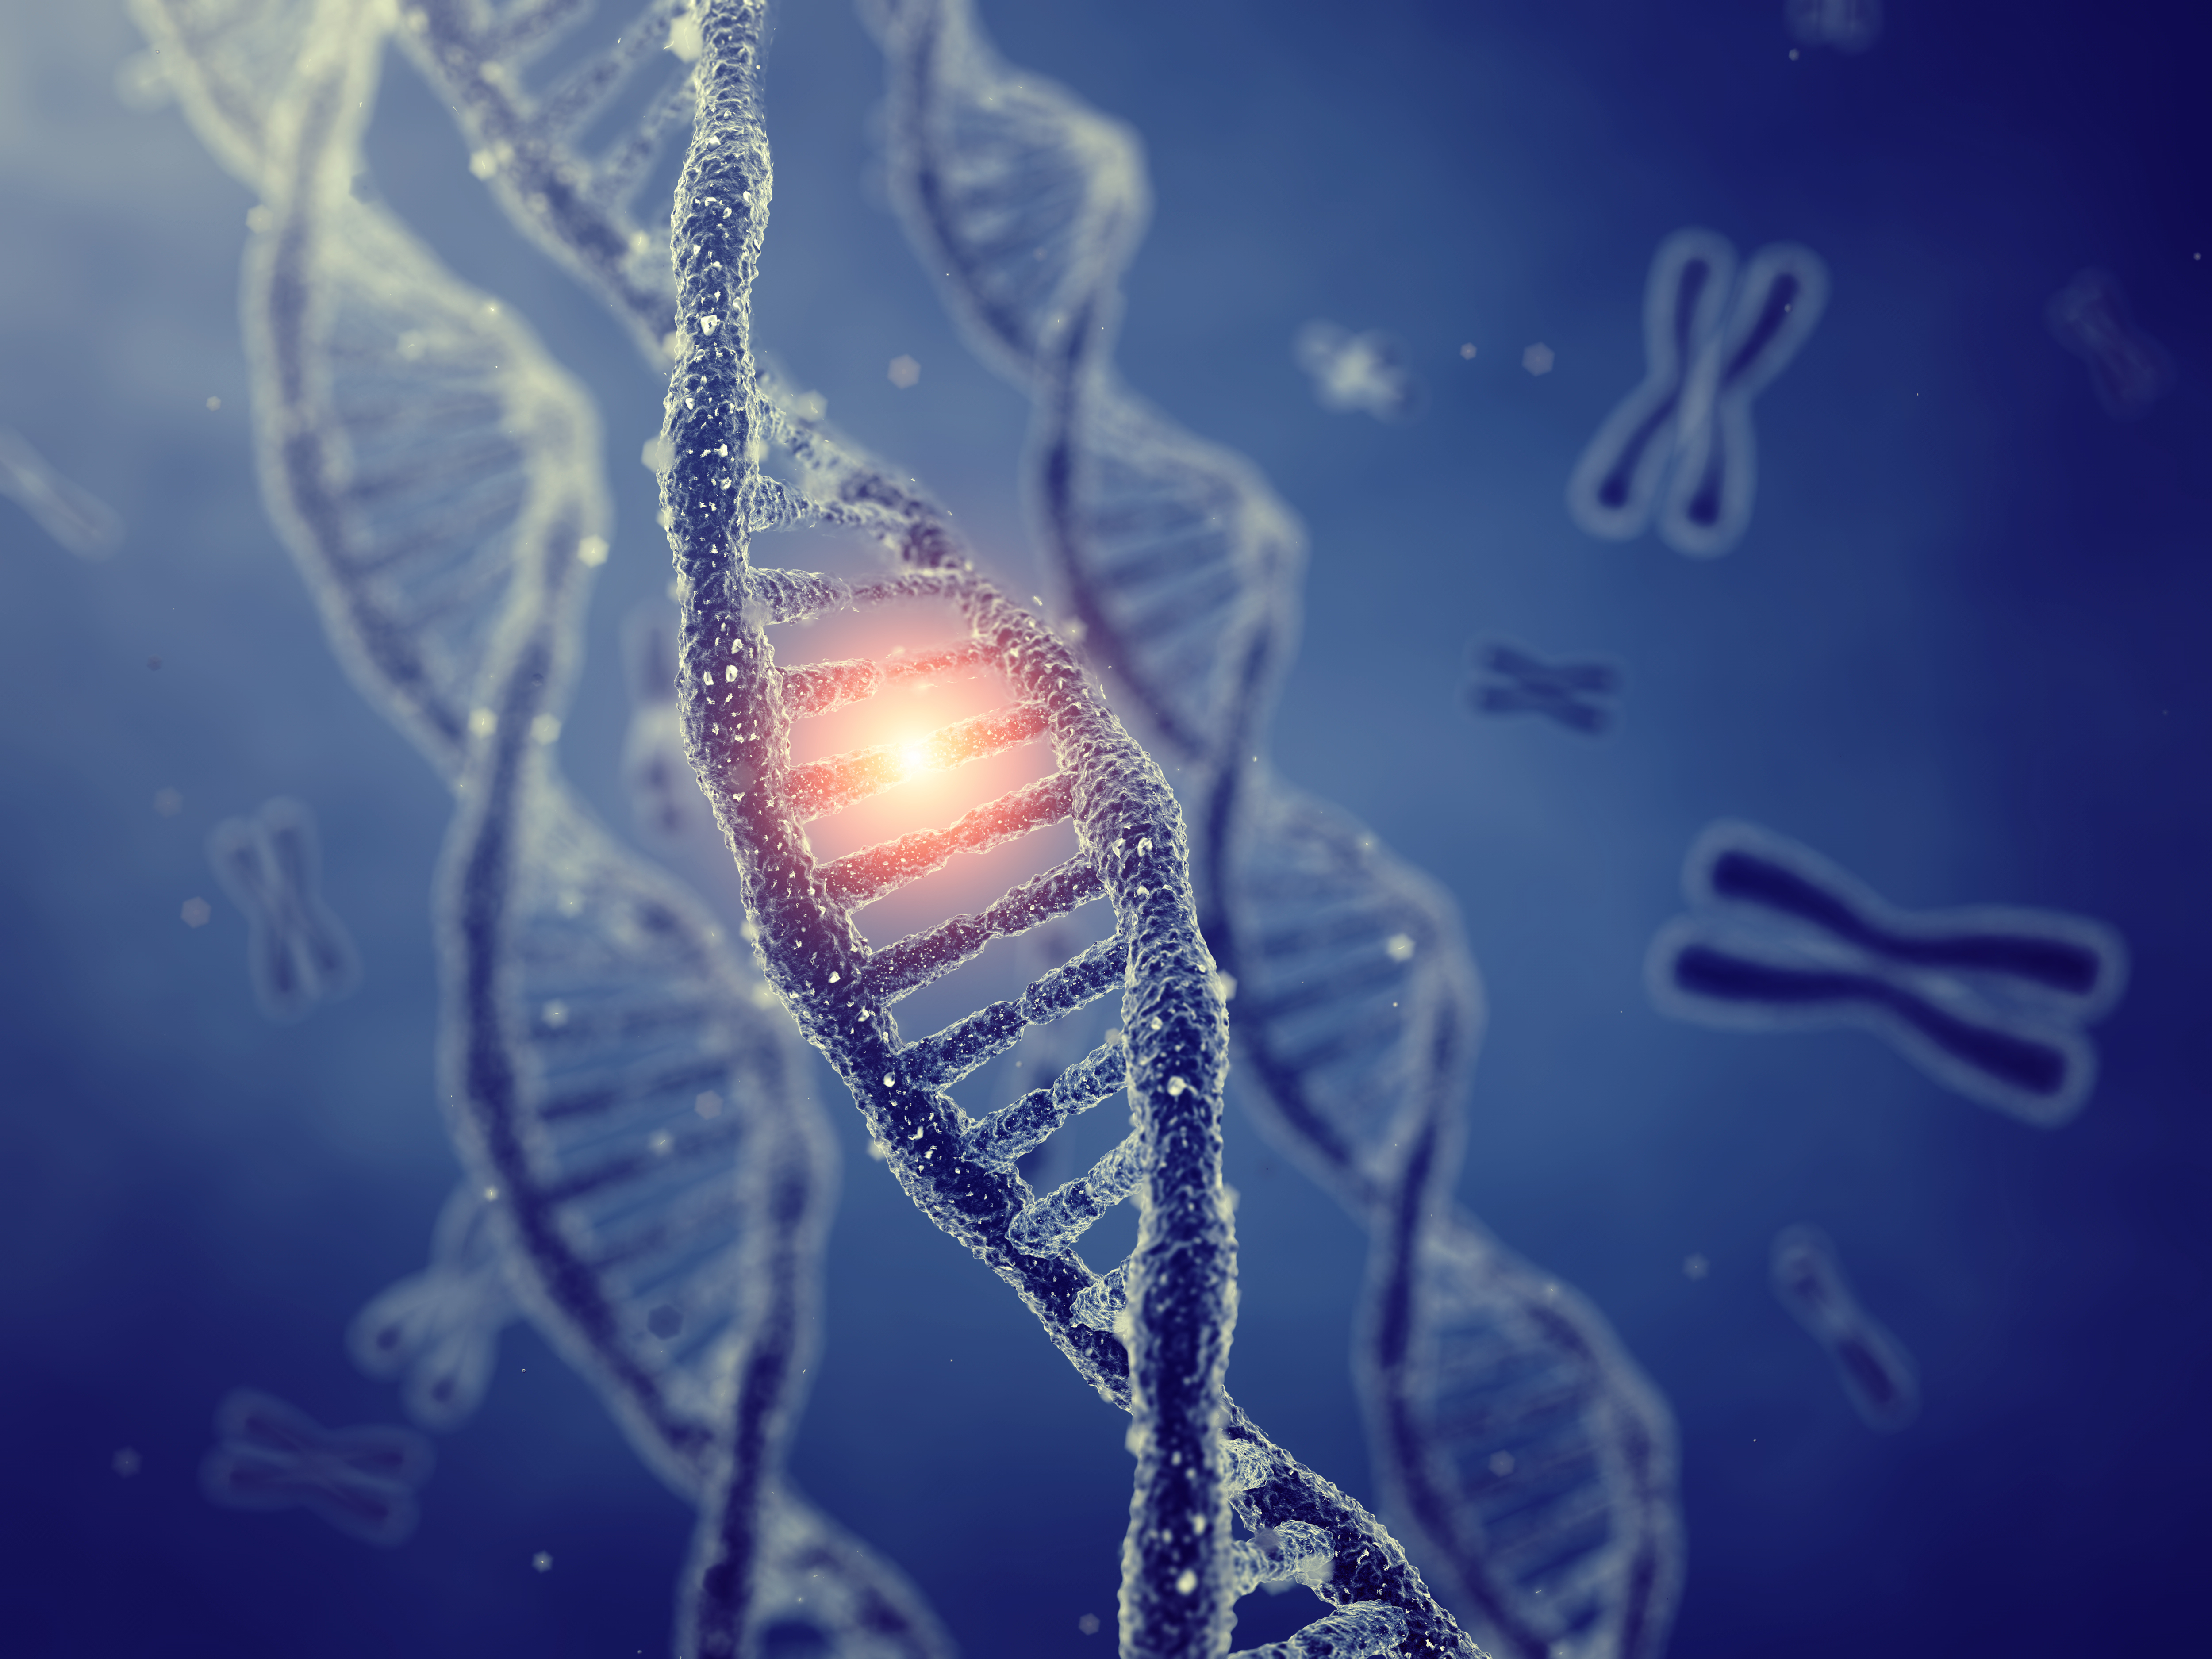 研究揭示基因組「暗物質」怎樣導致癌症